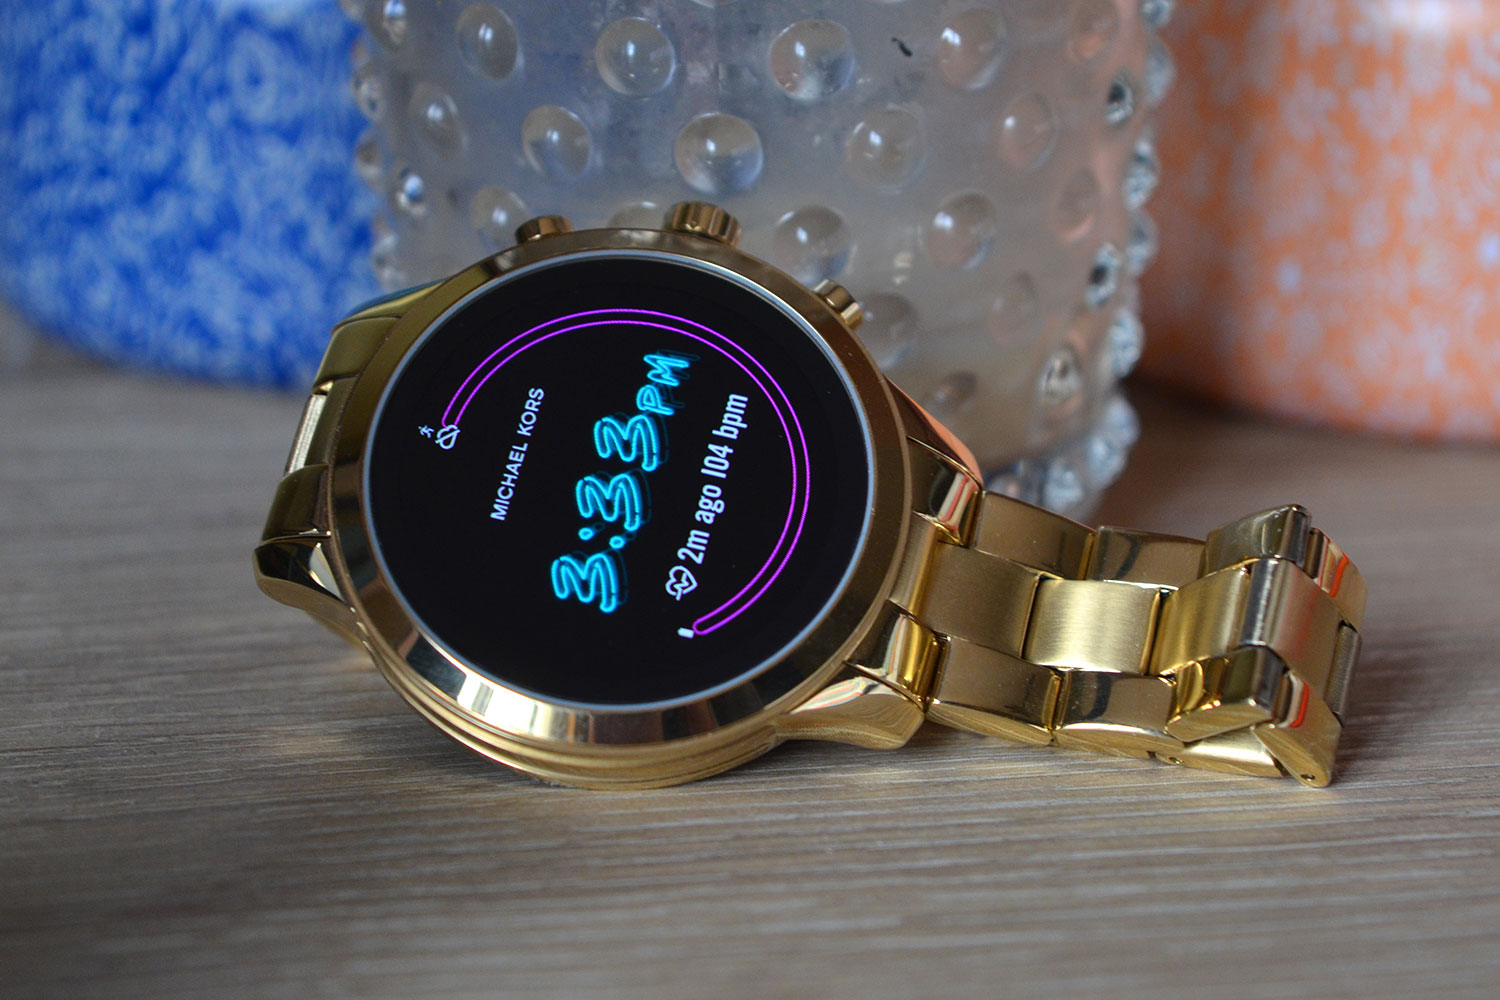 Đồng hồ thông minh Fossil Michael Kors chính thức có mặt tại PNJ Watch